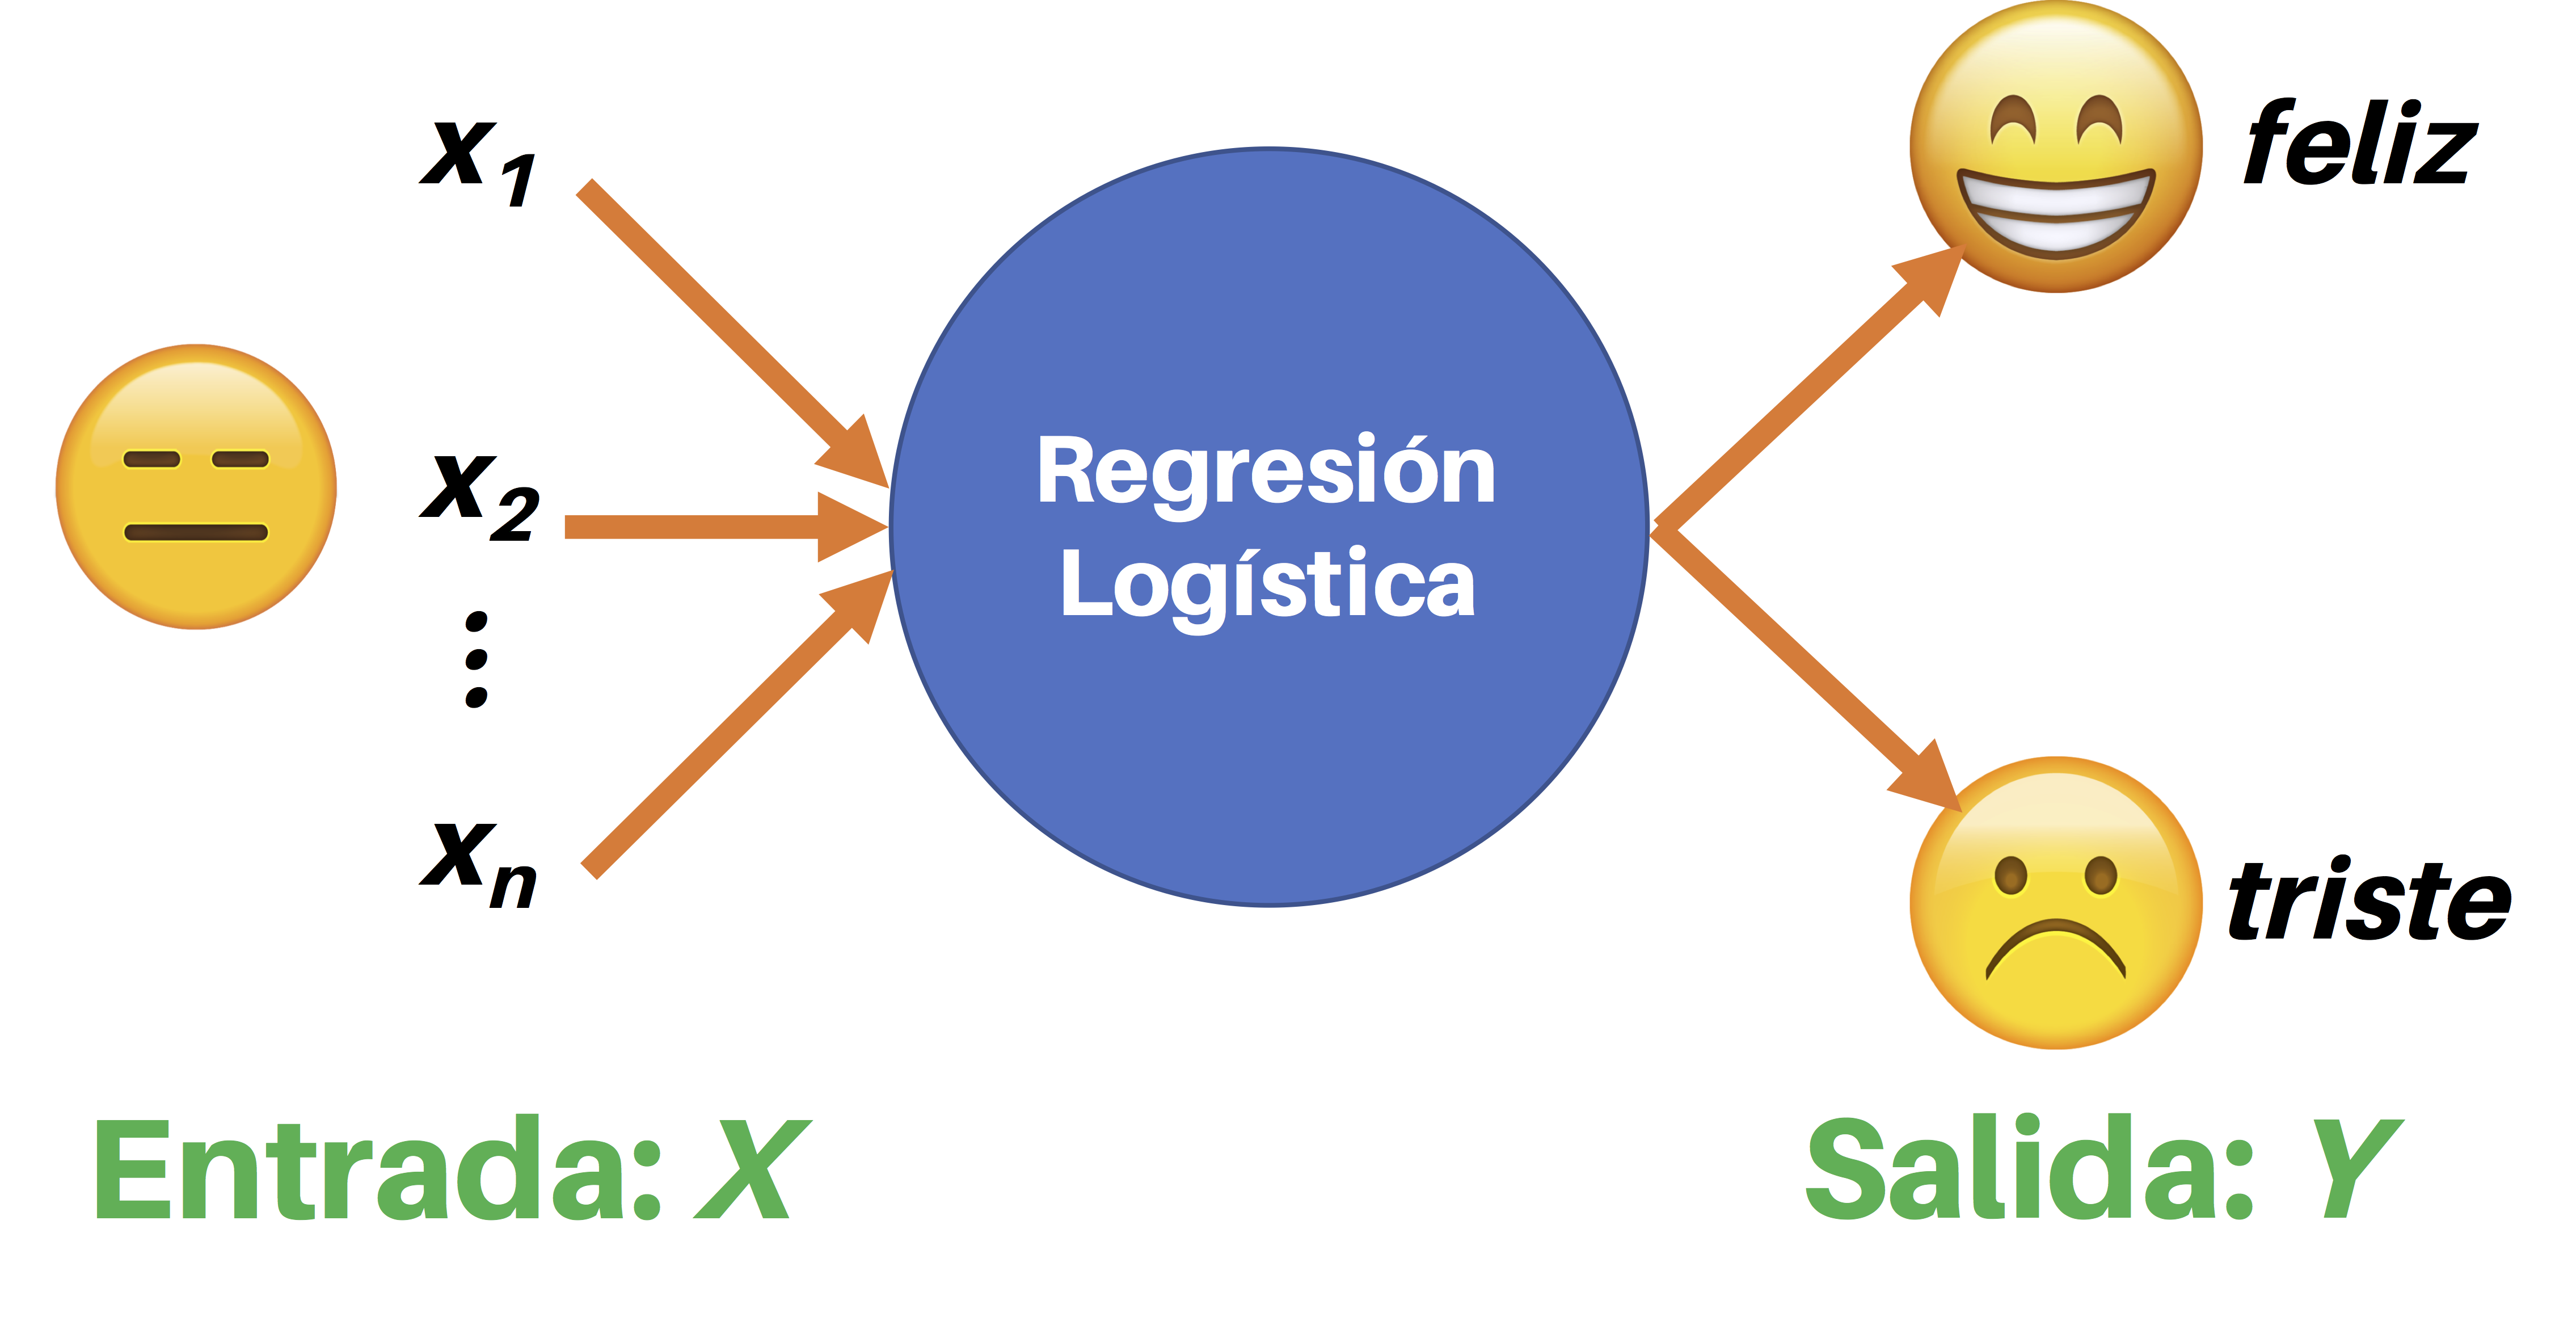 Concepto general de la regresión logística para una imagen con 'n' características (x1, x2, ..., xn). La regresión logística la clasifica en una de dos posibles categorías (feliz o triste)